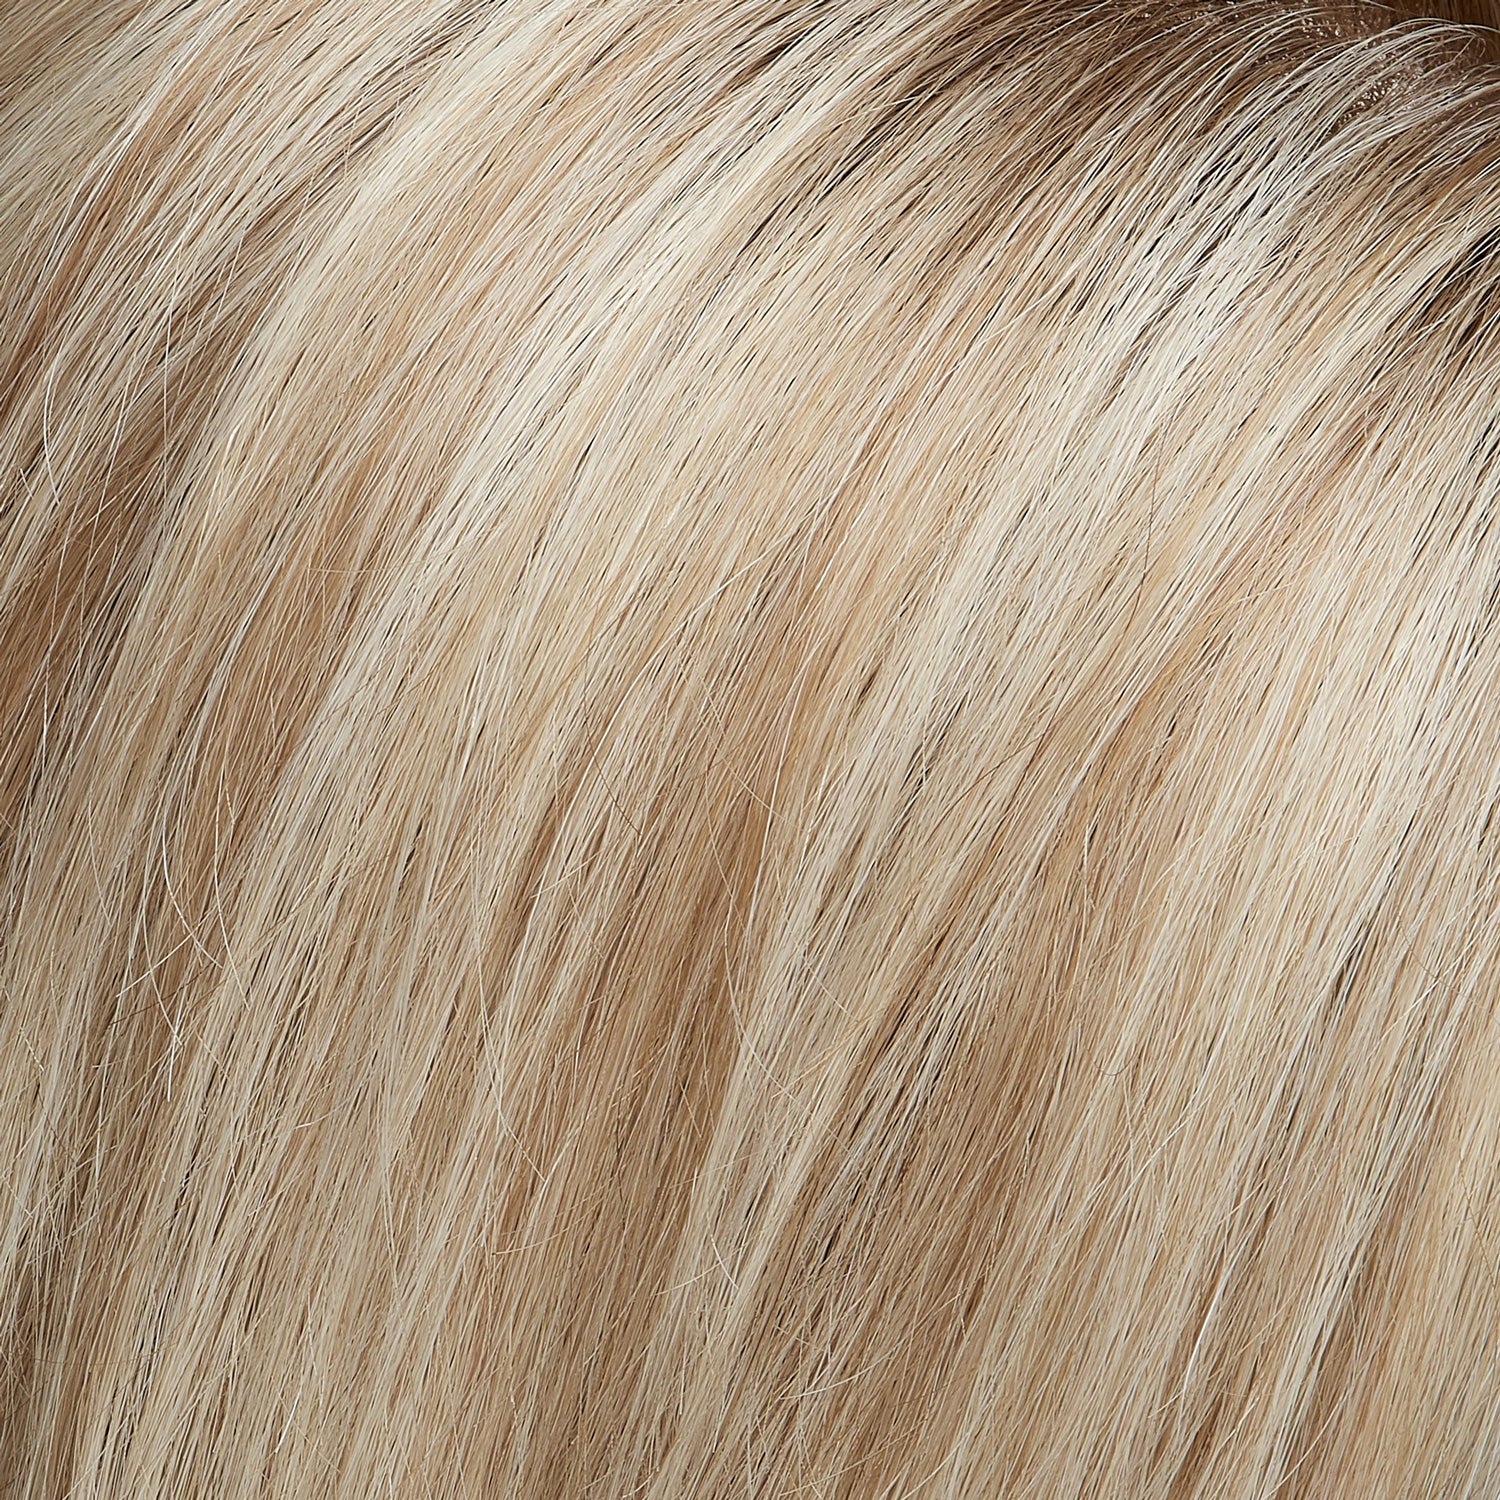 Perruque Cheveux Humains Naturels Blonds Jon Renau Blake Couleur fs17101s18